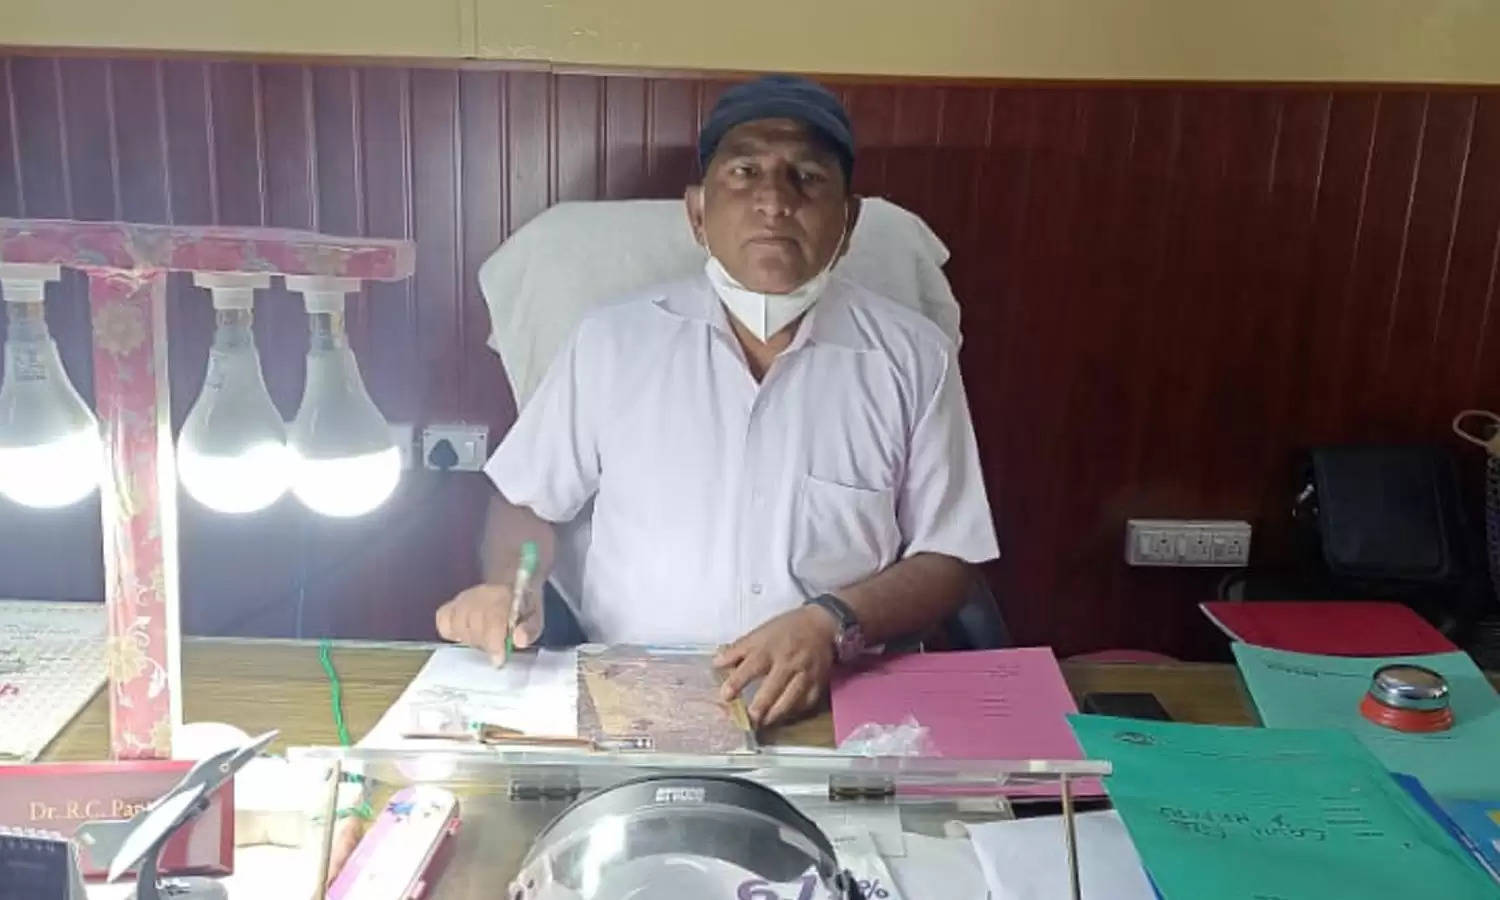 चिकित्सालय में सुविधाएं होने के बावजूद मरीज़ों को किया जाता है दूसरी जगह रेफर, सामाजिक कार्यकर्ता संजय पांण्डे ने इस पर सौंपा शिकायती पत्र 